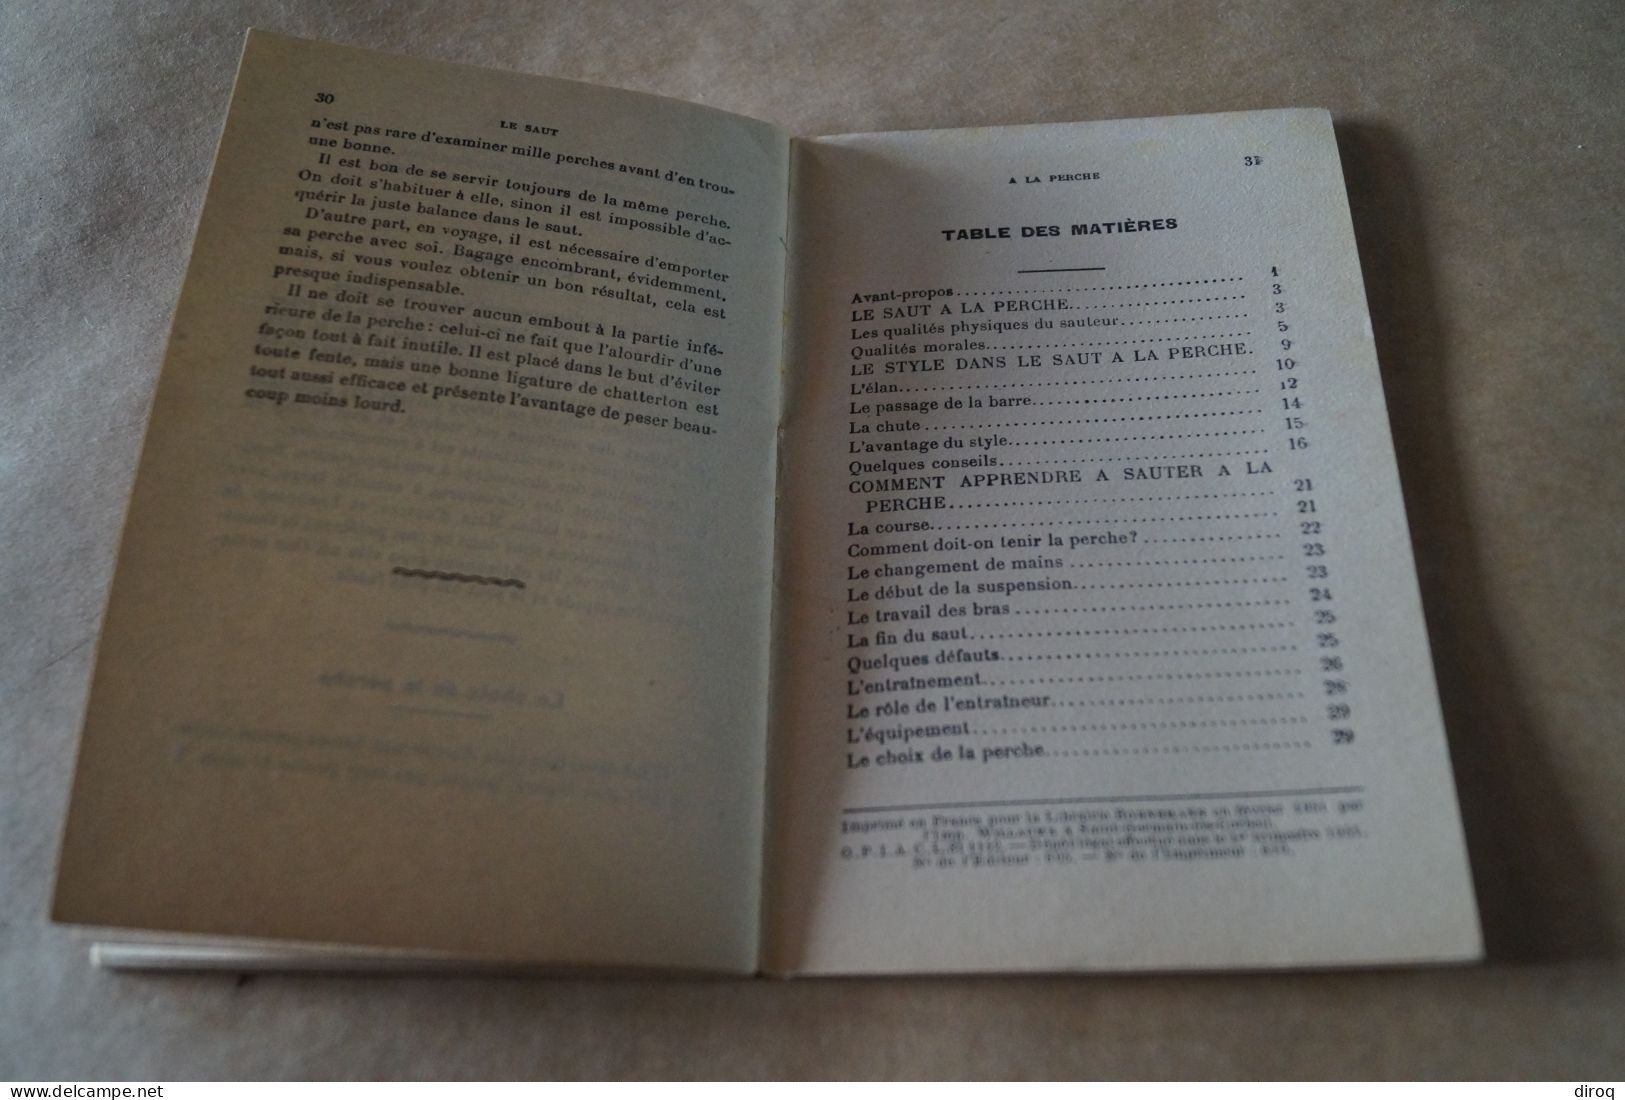 Athlétisme,la saut à la Perche,Ramadier et Paul Lafont,32 pages,18 Cm. sur 11,5 Cm.